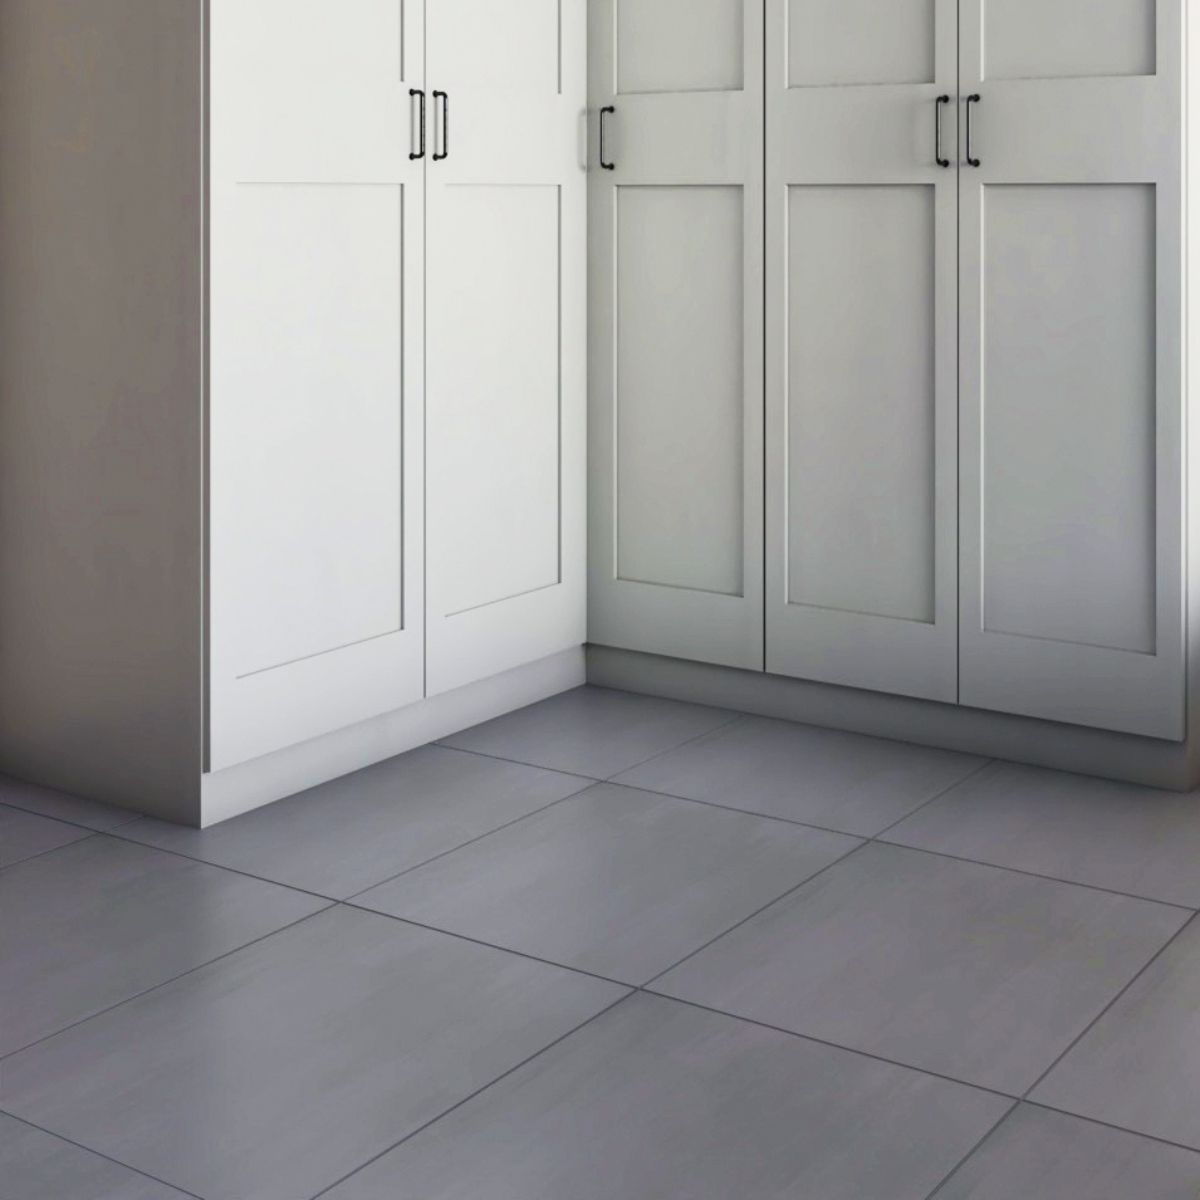 Light Grey Sqaure Floor Tiles Design